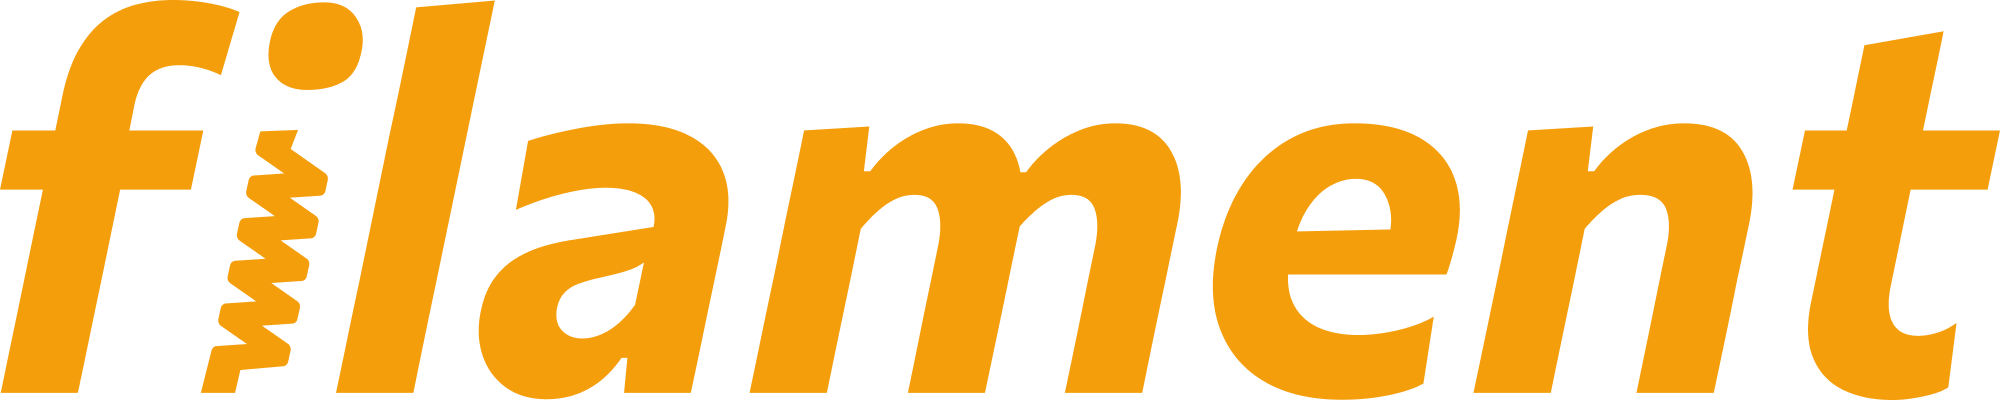 Filament logo